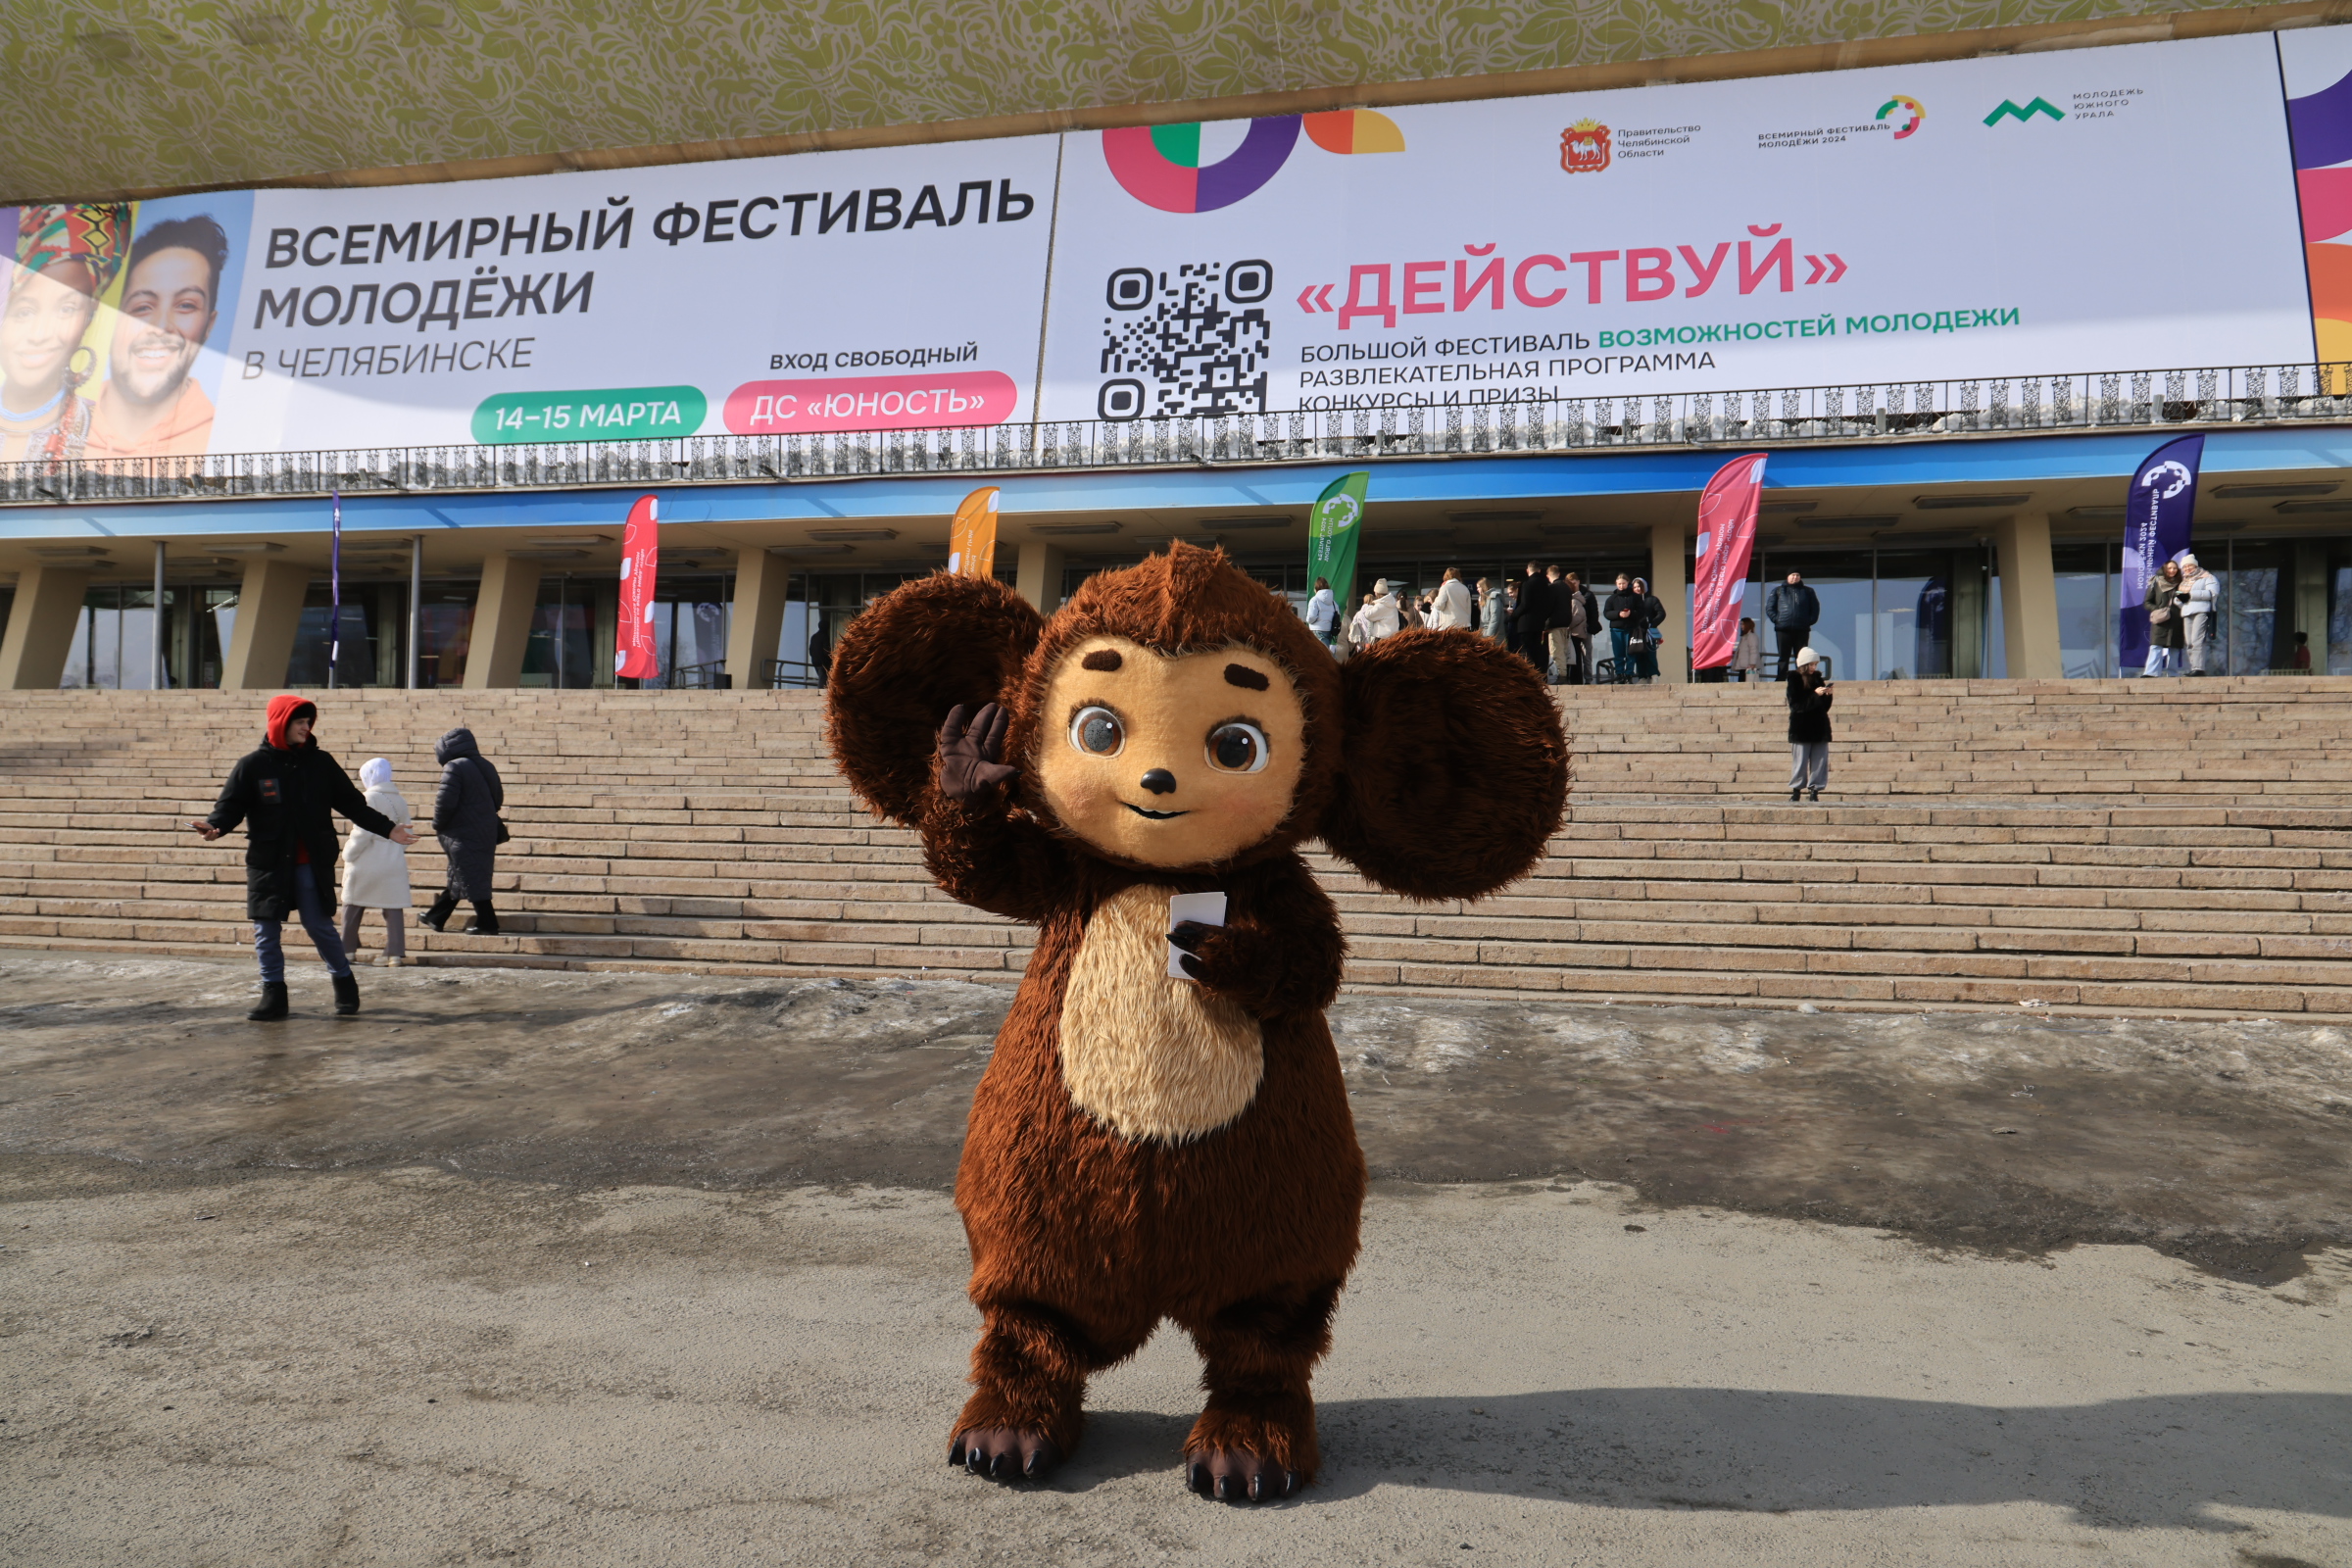 Две тысячи участников соберутся на челябинском фестивале «Действуй»